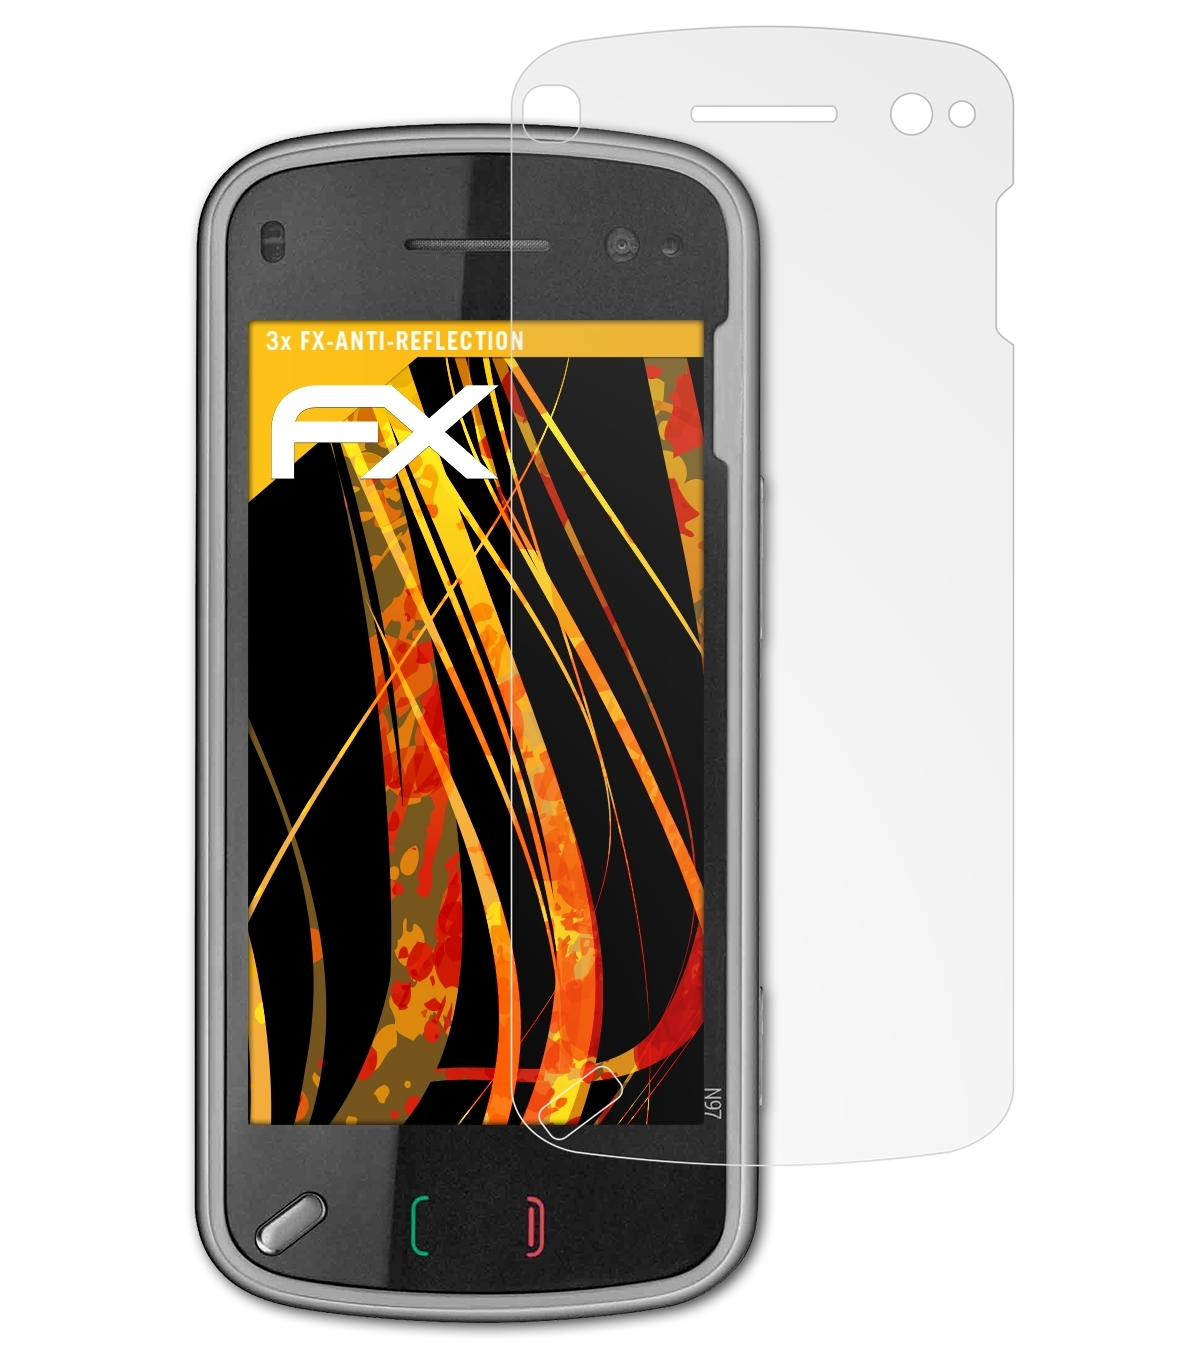 FX-Antireflex Nokia N97) Displayschutz(für 3x ATFOLIX